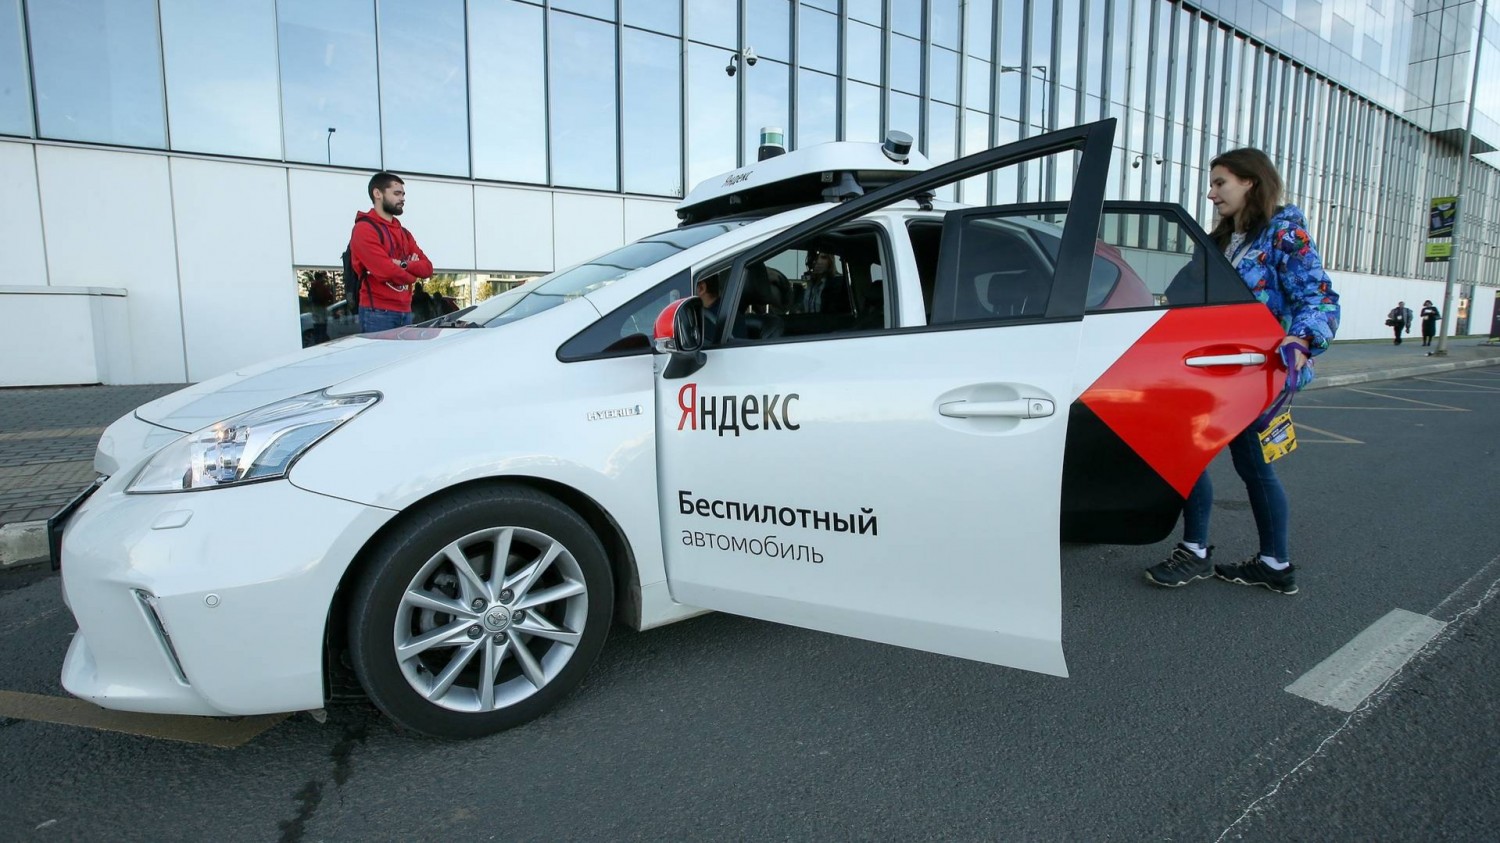 «Яндекс» начал тестировать беспилотные автомобили в Москве